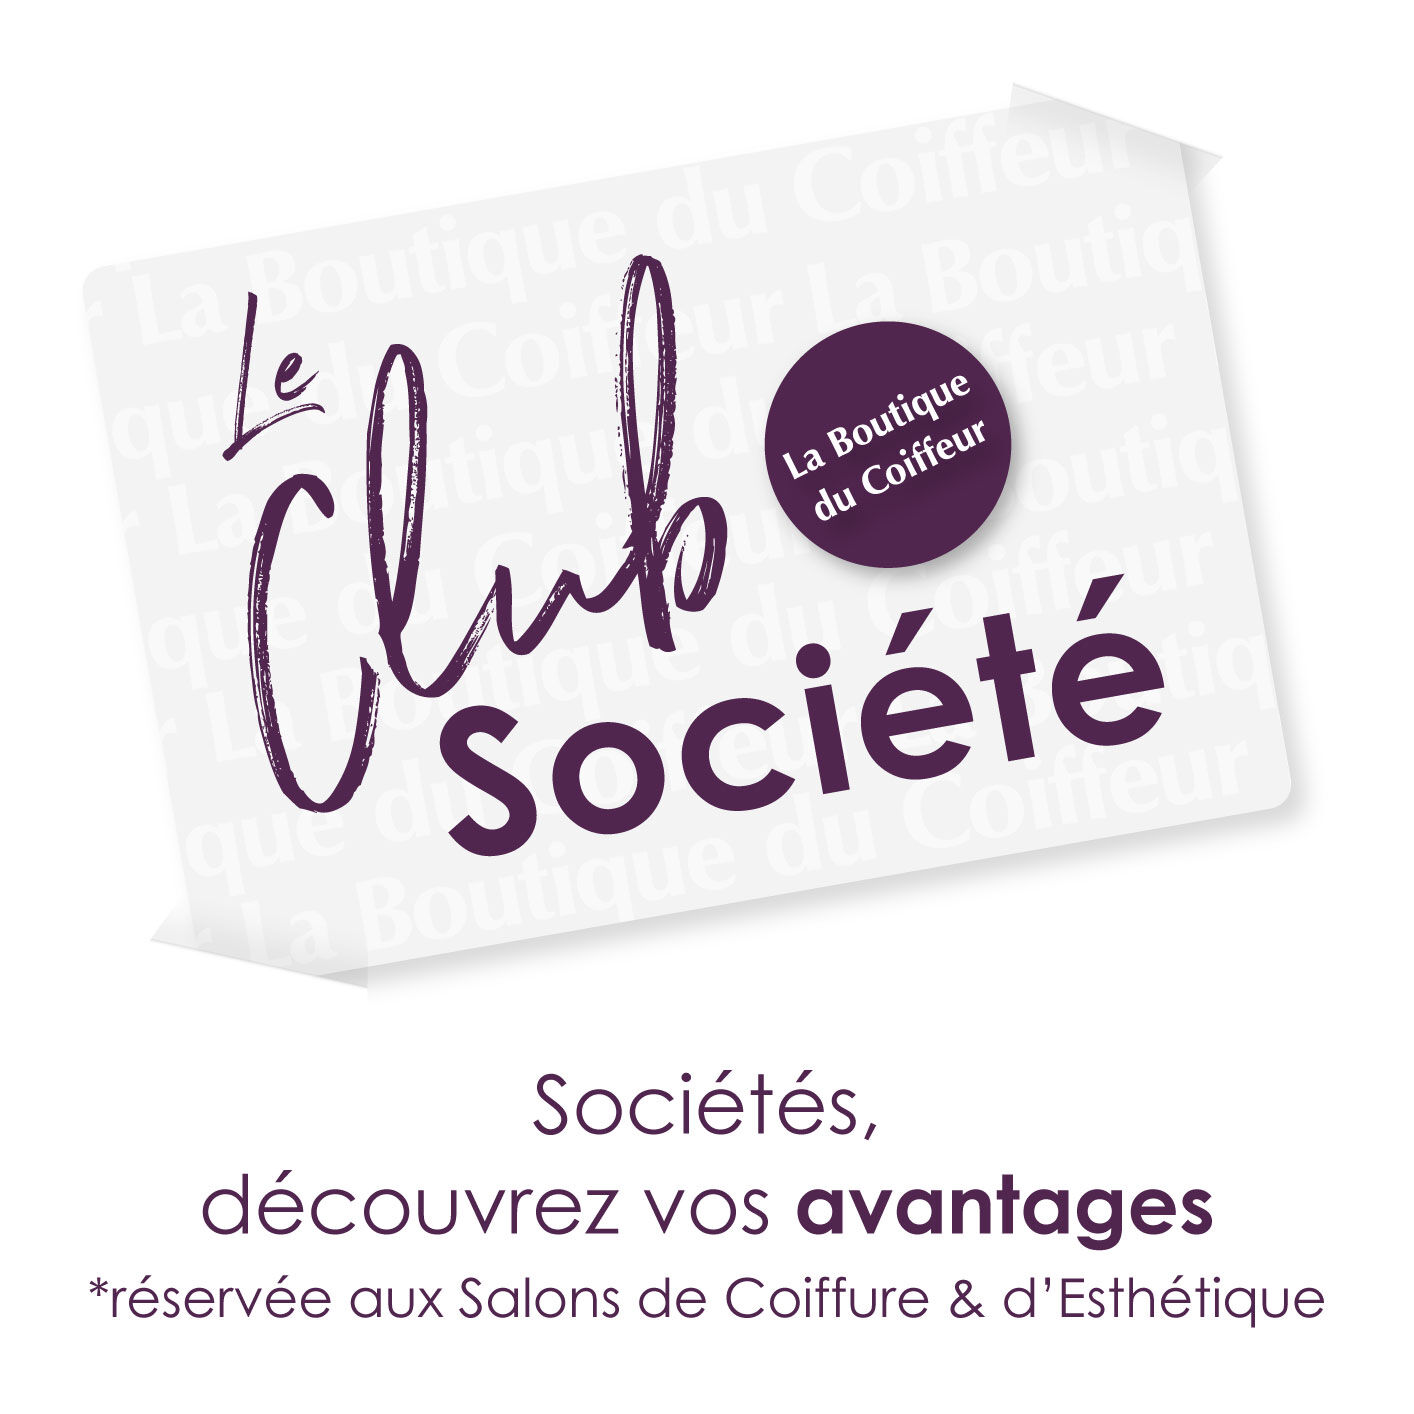 Le Club Société et Salons de Coiffure